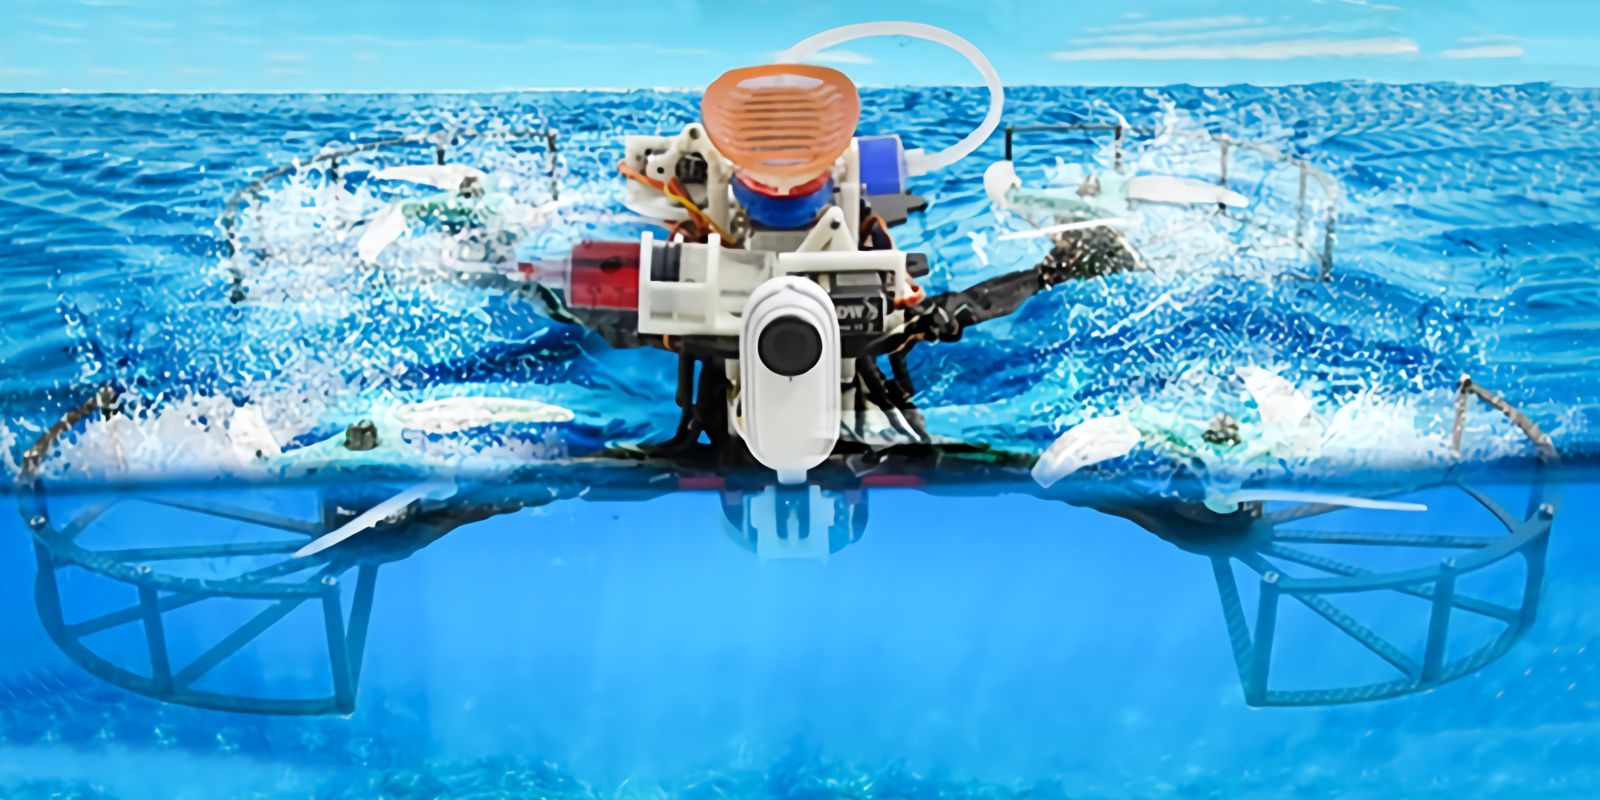 Este dron futurista puede volar, bucear bajo el agua y hacer autostop